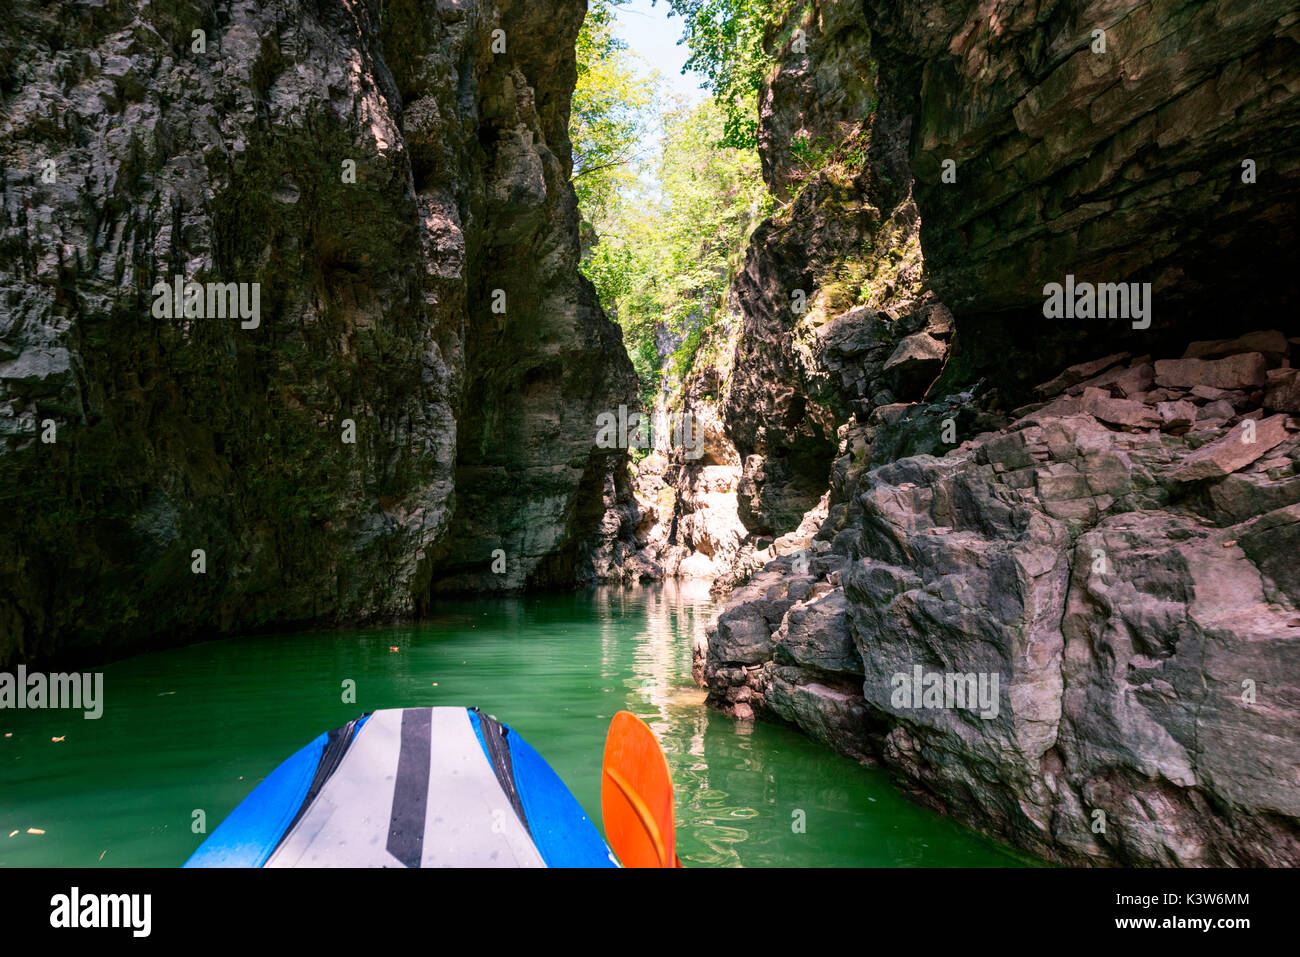 Le canyon de la rivière Novella vu de kayak, Lac Saint Giustina, vallée de la province de Trento, Non, Trentin Haut Adige, Italie, Europe Banque D'Images